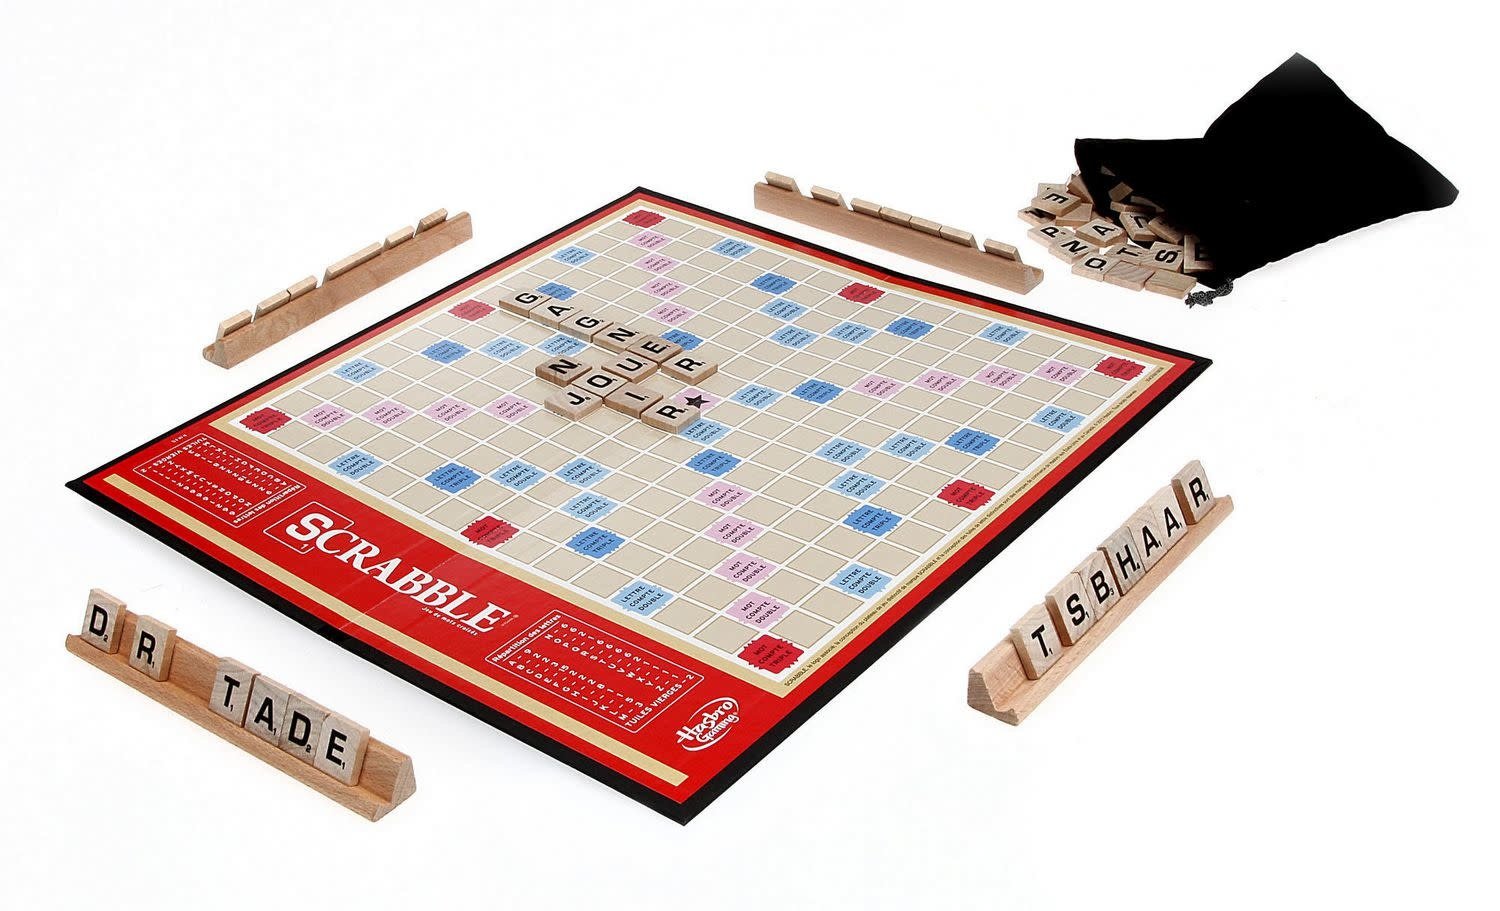 Scrabble version francais, 1 unité – Hasbro : Cadeaux pour tout petits